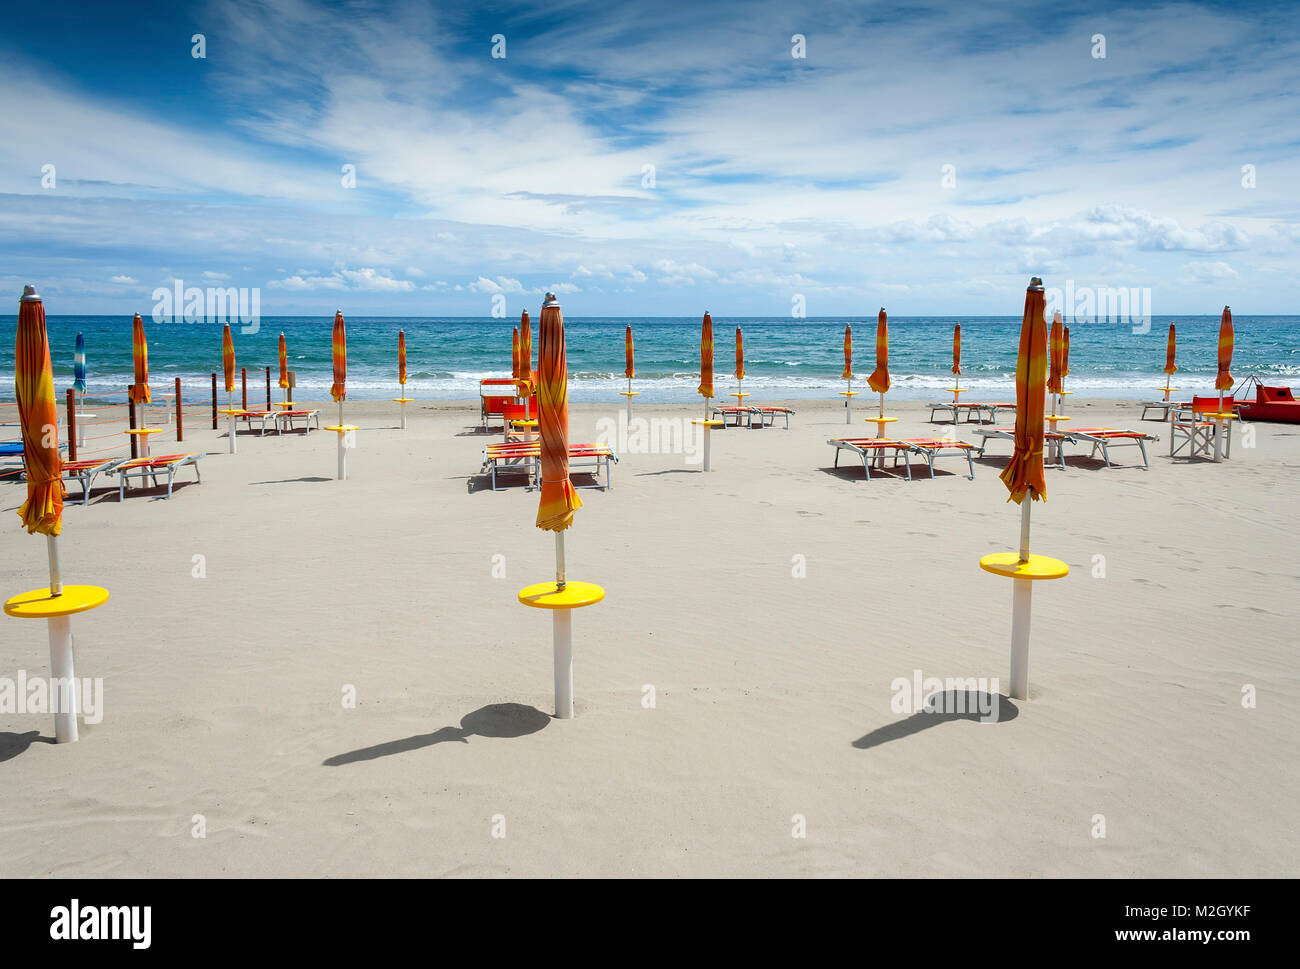 Laigueglia spiaggia sabbiosa al mattino prima che le persone sono arrivati ripiegato con ombrelloni e lettini per prendere il sole con un cielo blu e nuvole bianche in Liguria Italia Foto Stock